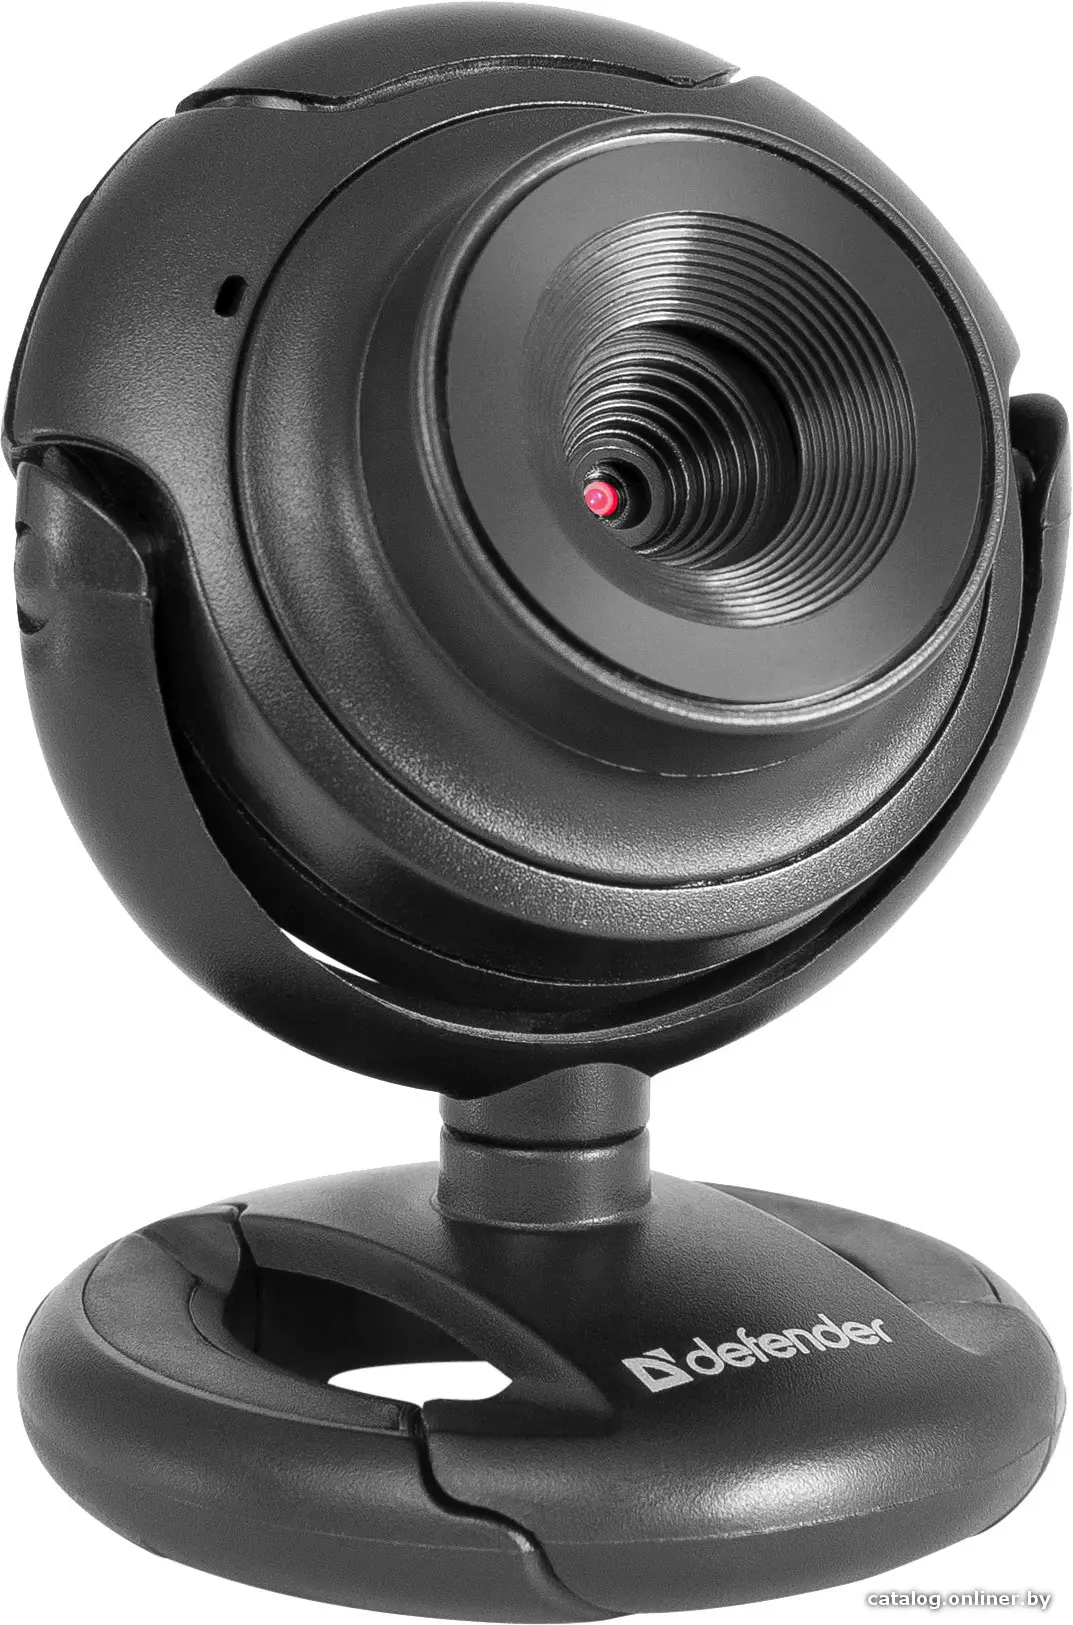 Купить Веб-камера Defender C-2525HD, цена, опт и розница